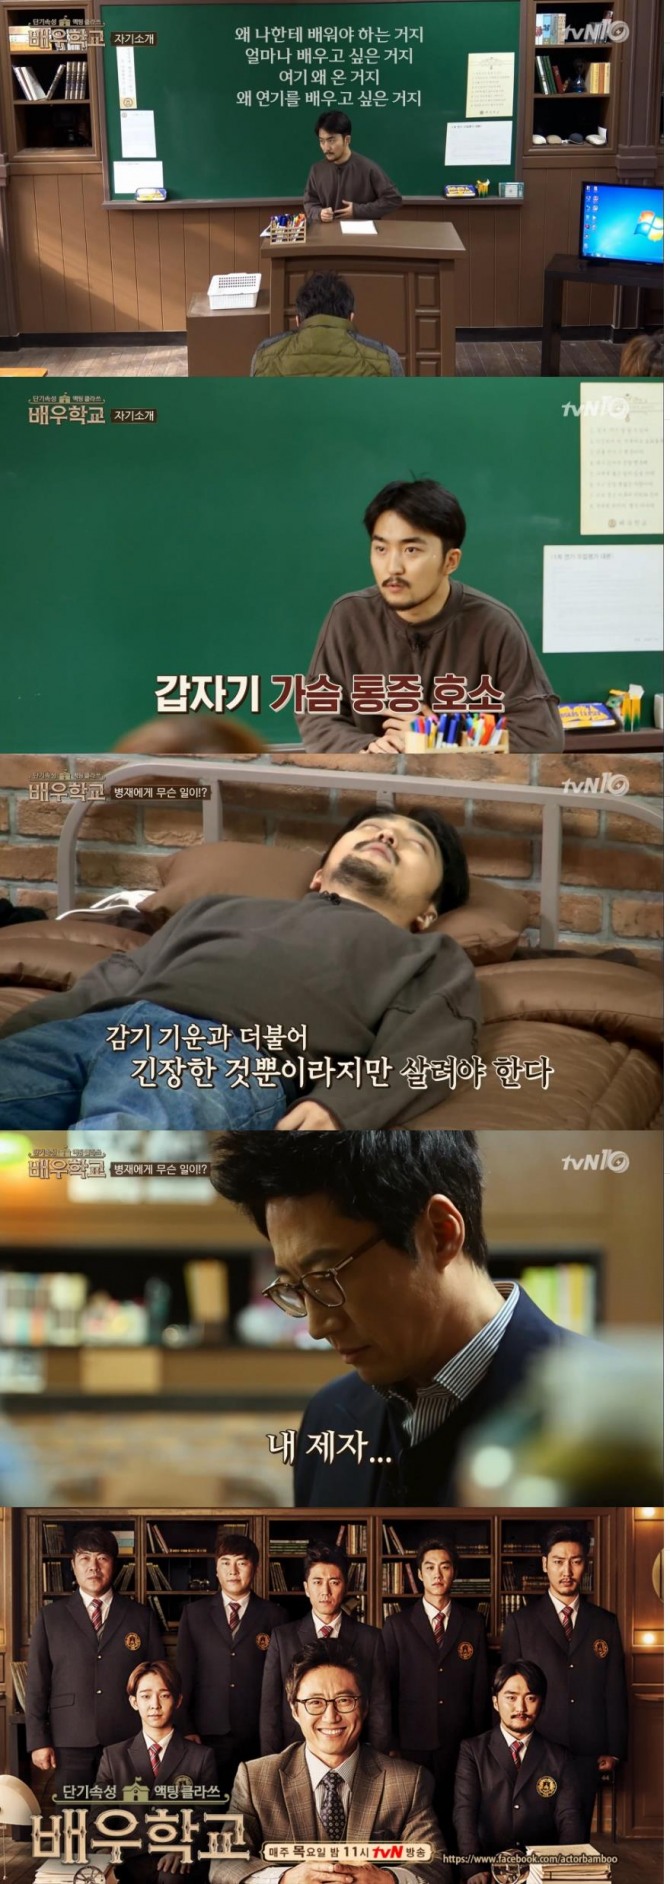 4일 방송된 tvN '배우학교'에서 자기소개를 하던 유병재가 갑자기 가슴 통증을 호소해서 박신양을 당황시켰다./사진=tvN 방송 캡처